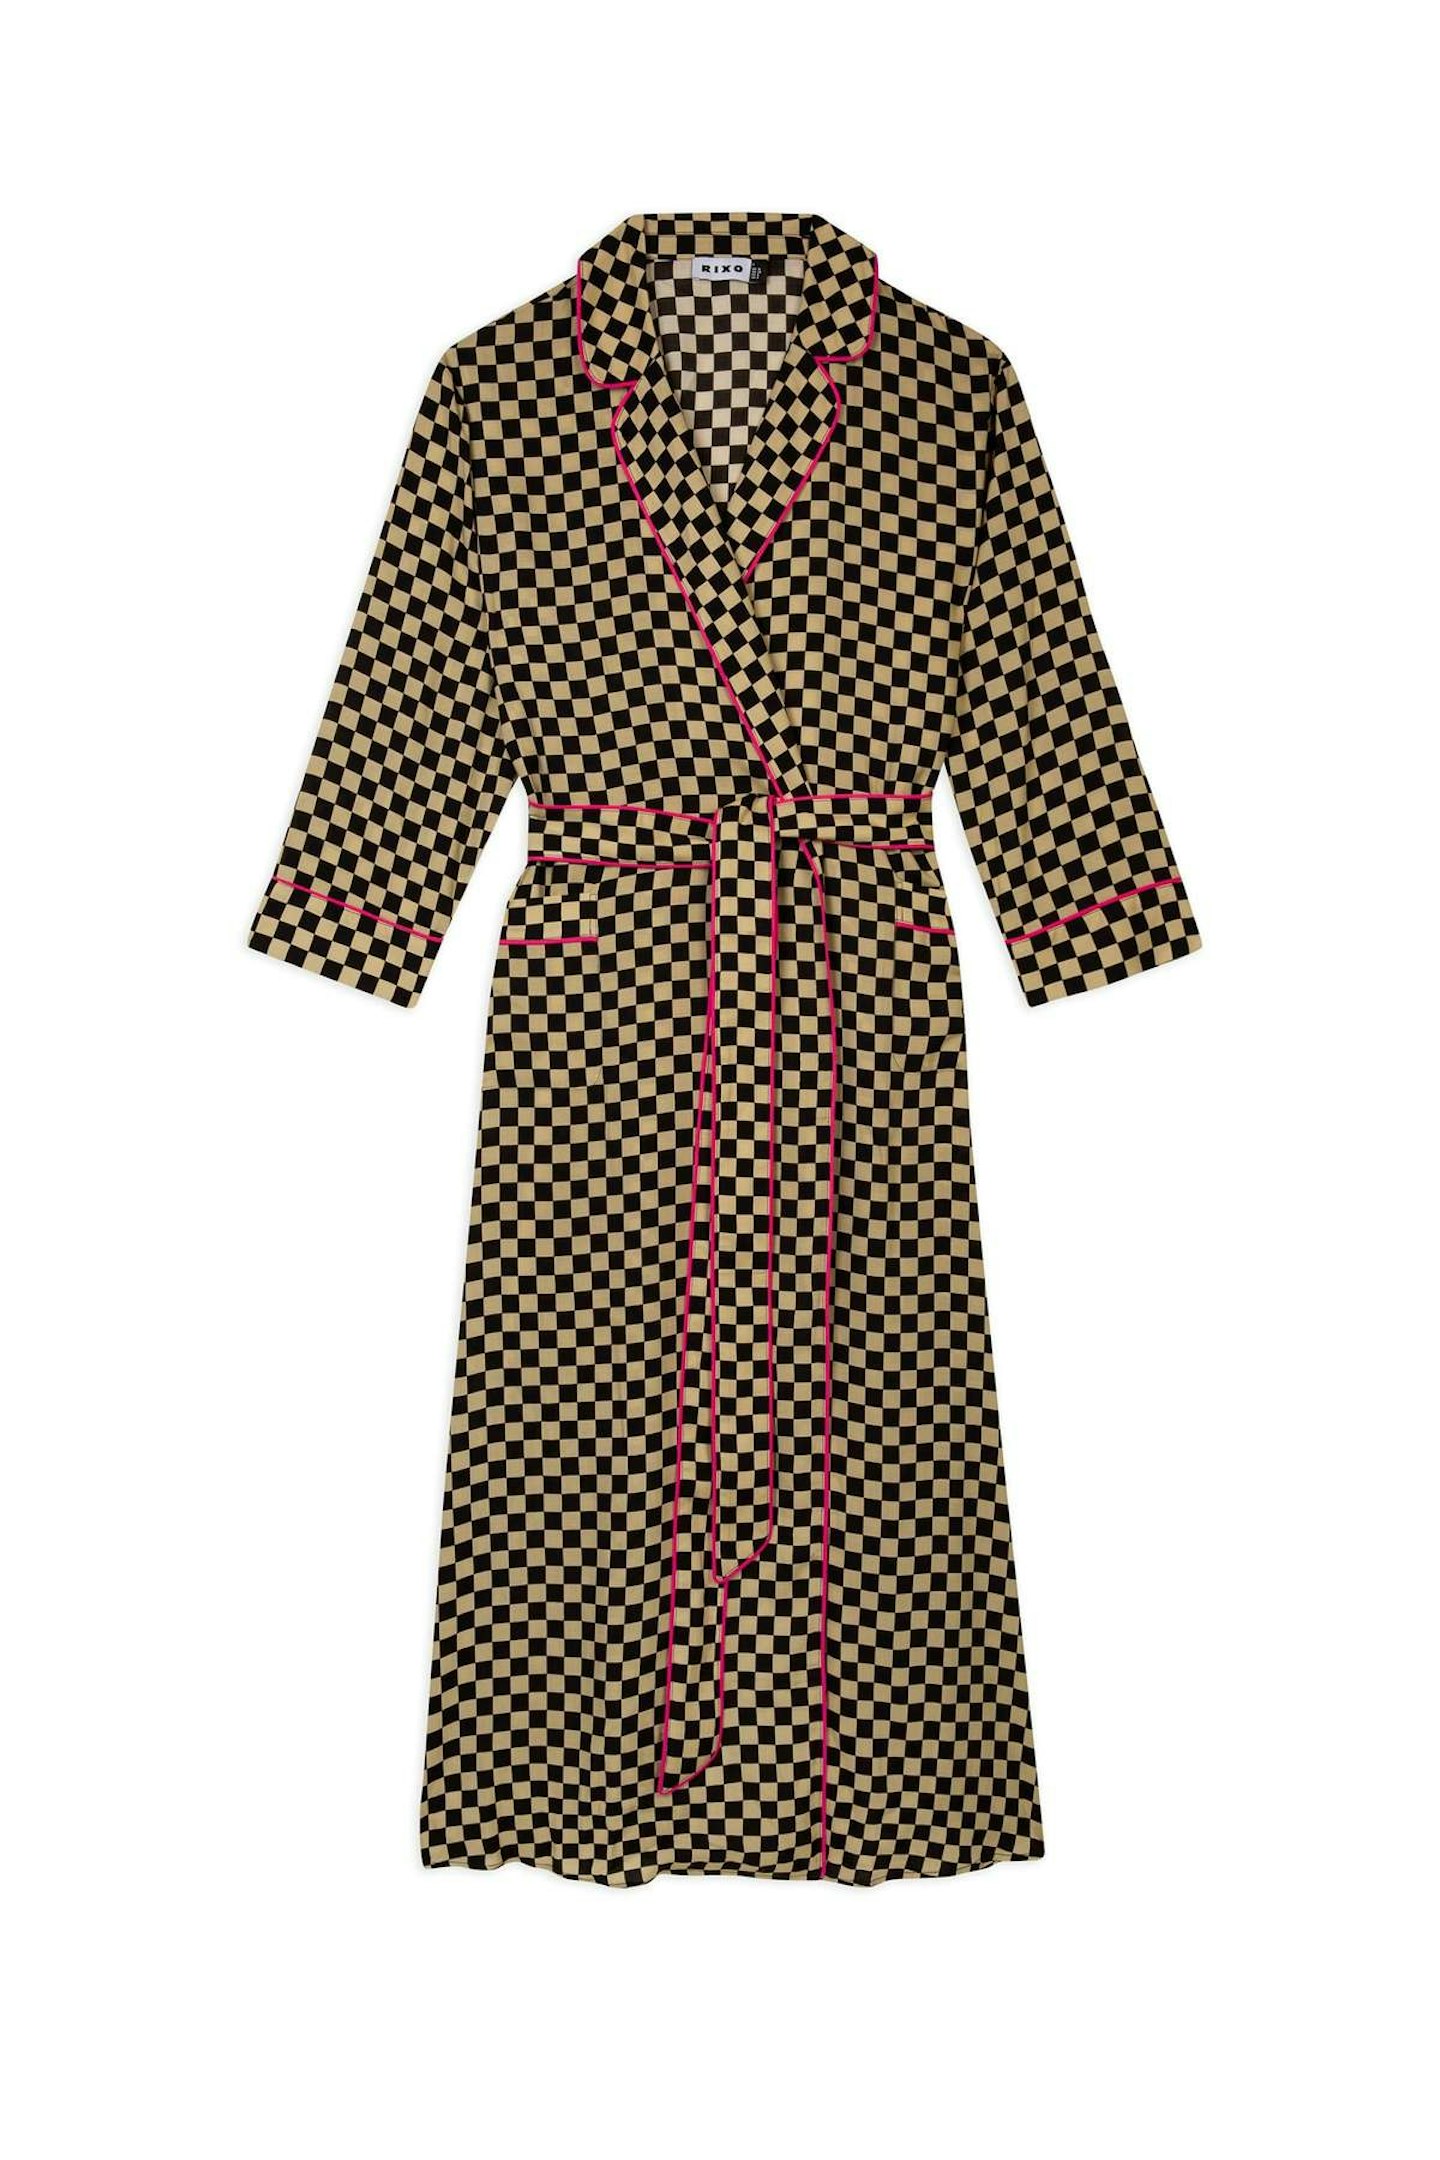 Rixo, Checkerboard Robe, £135